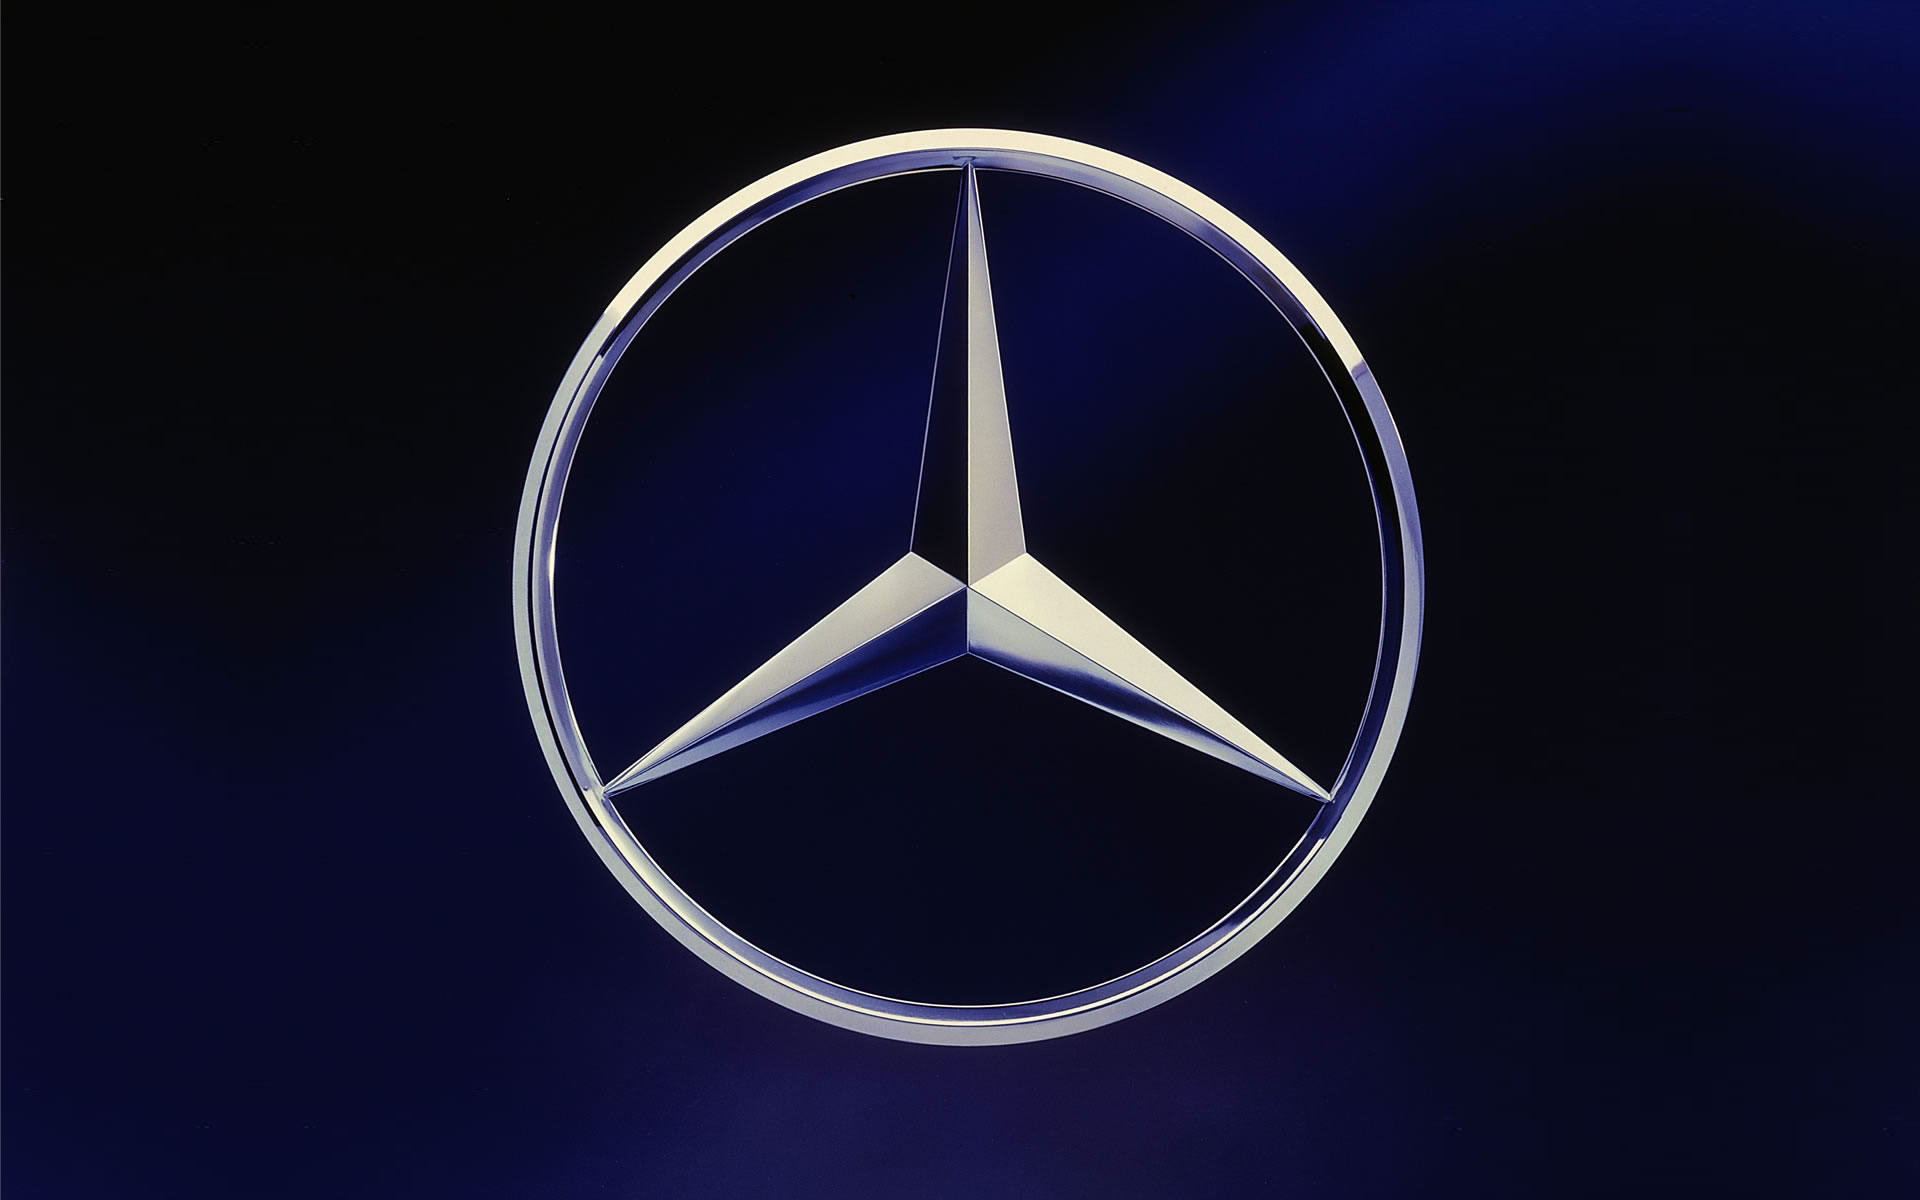 Triệu hồi Mercedes-Benz lỗi: Mercedes-Benz vừa công bố triệu hồi một số mẫu xe vì lỗi kỹ thuật. Hãy cùng xem hình ảnh để biết thêm thông tin chi tiết về các mẫu xe bị triệu hồi và cách xử lý vấn đề này để bảo đảm sự an toàn cho các khách hàng của hãng.